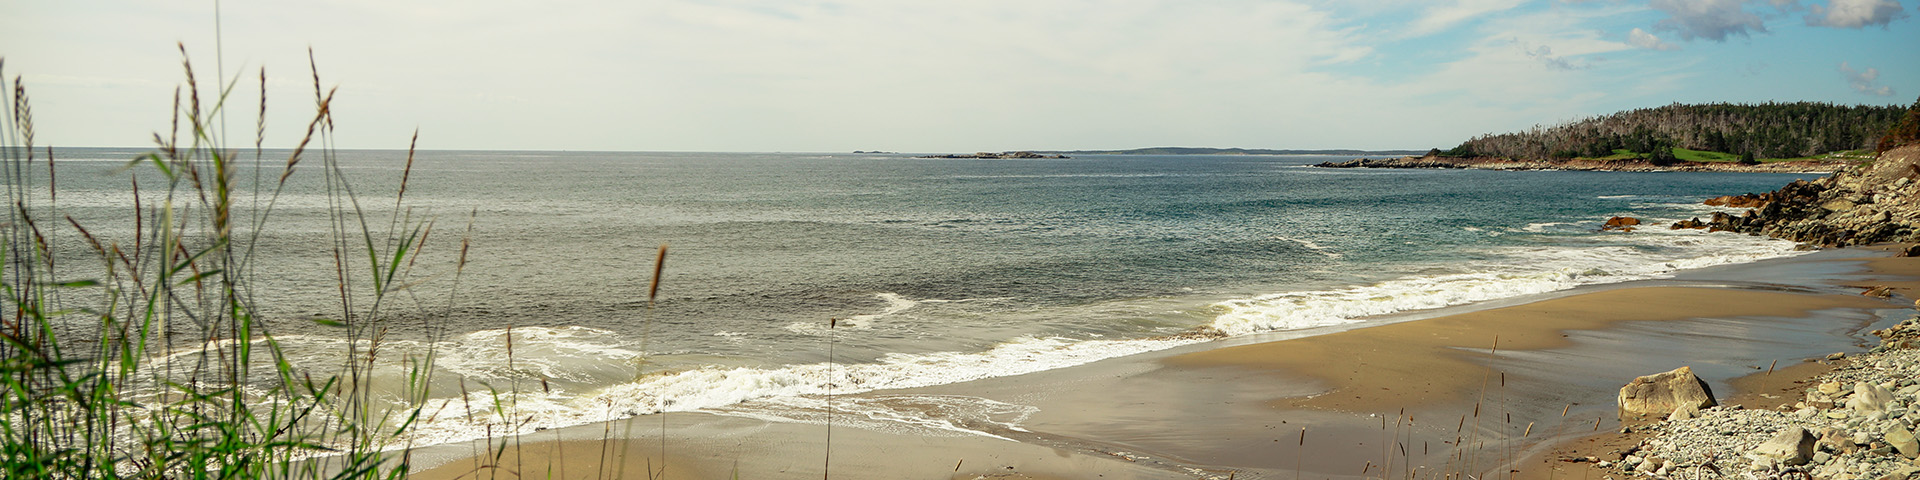 Une plage de sable par une journée ensoleillée avec de l'eau bleue, un paysage verdoyant à droite et de hautes herbes à gauche au premier plan.